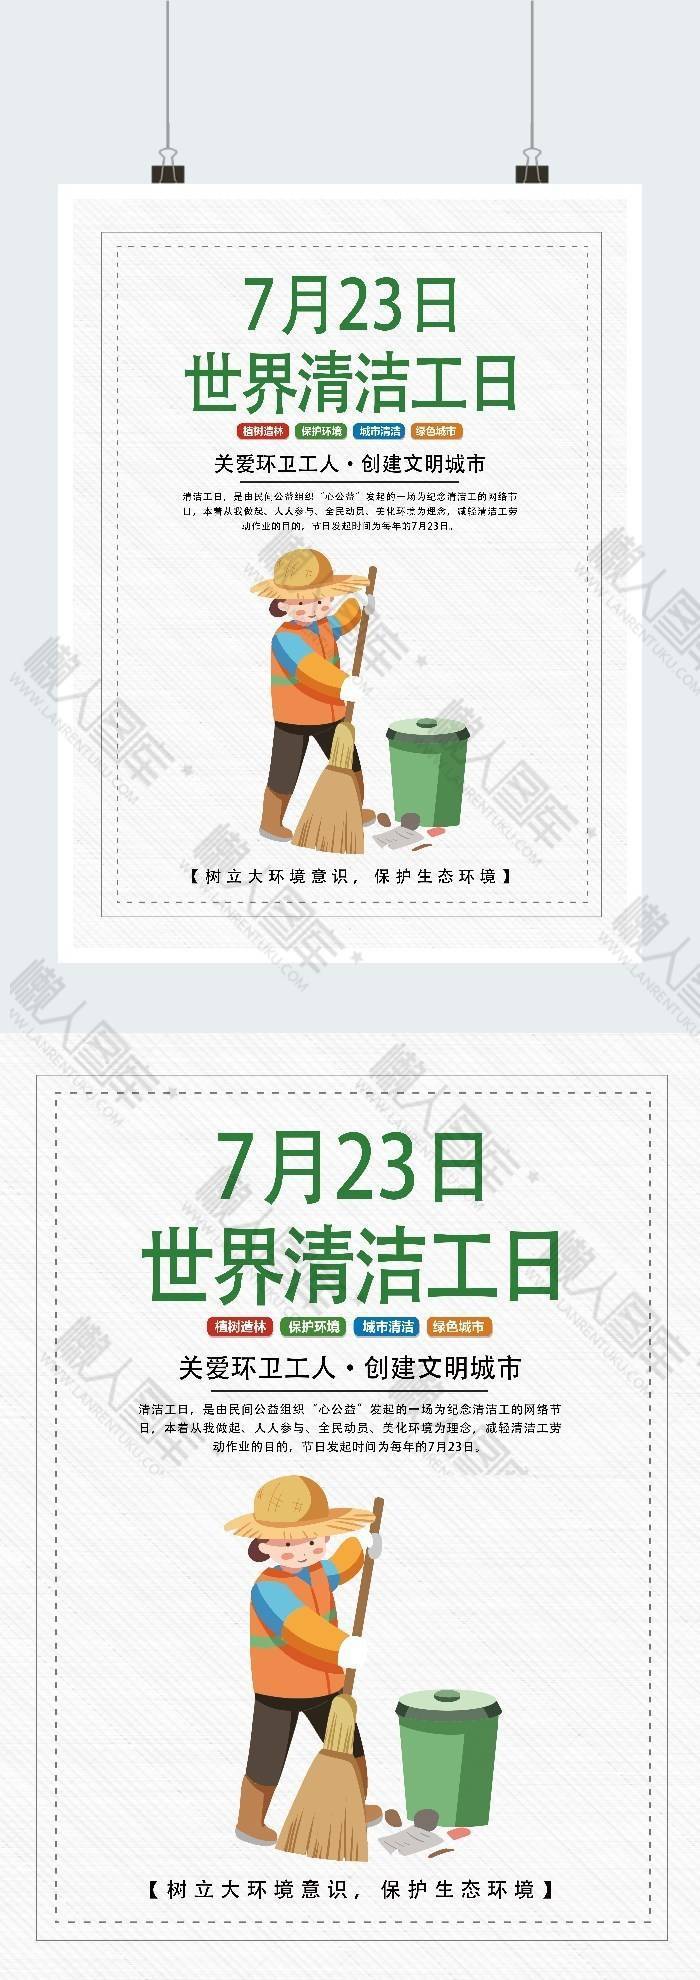 世界清洁工日广告平面海报